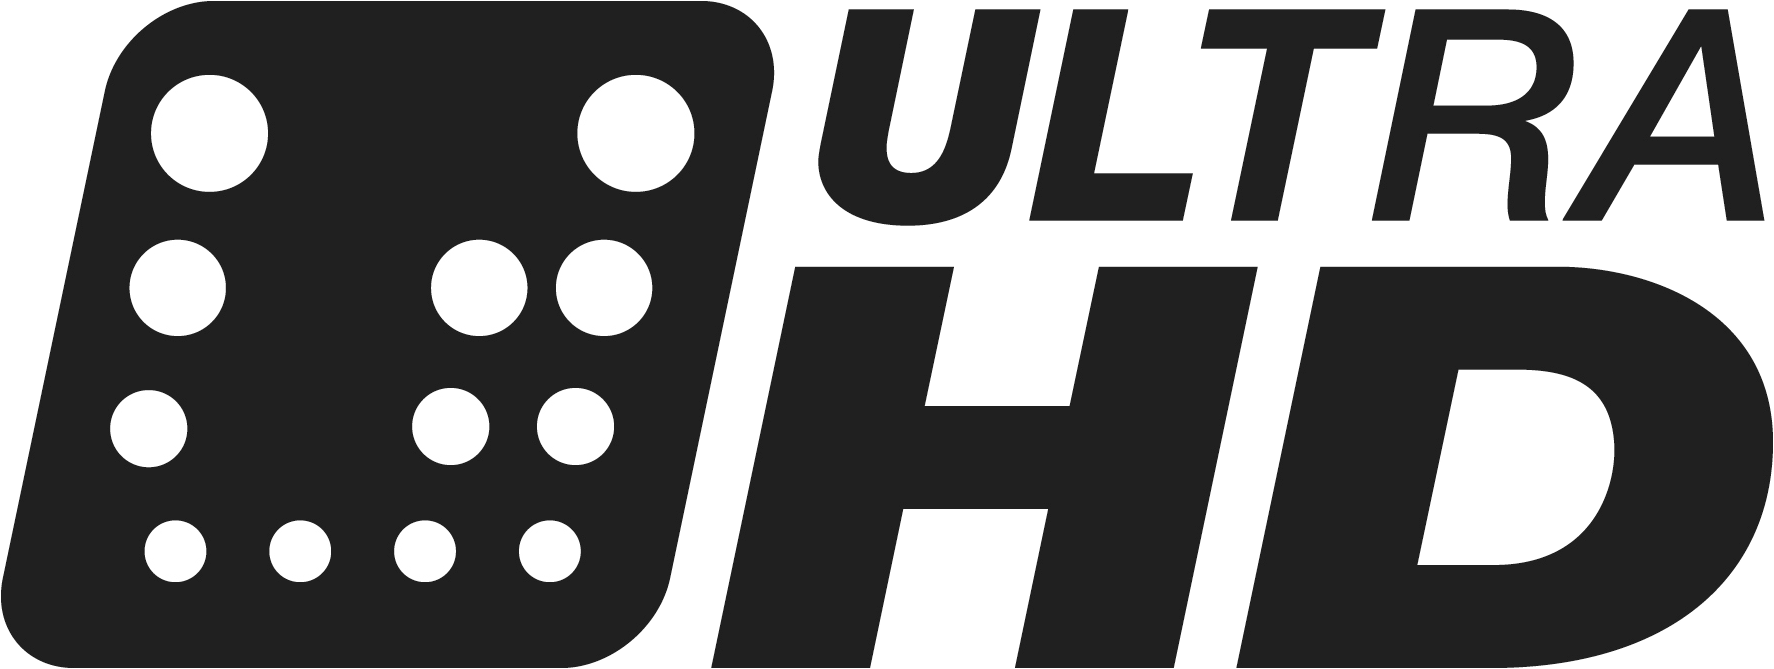 Uhd Alliance Stellt Standards Und Logo Für Ultra Hd Vor 4k Uhd Uhd